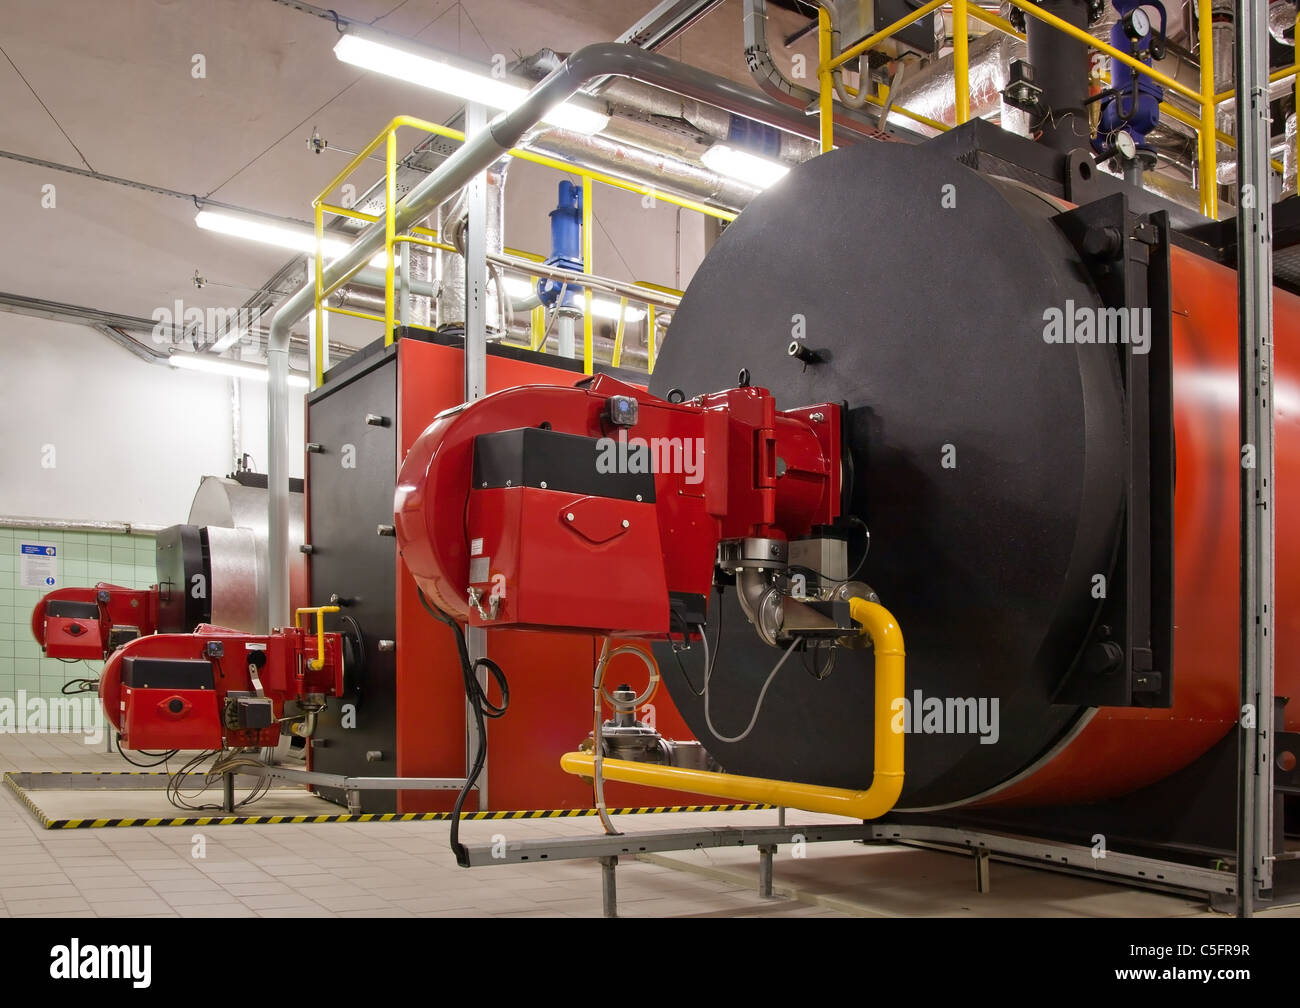 Gas-Heizkessel im Heizraum Gas für die Dampferzeugung Stockfotografie -  Alamy